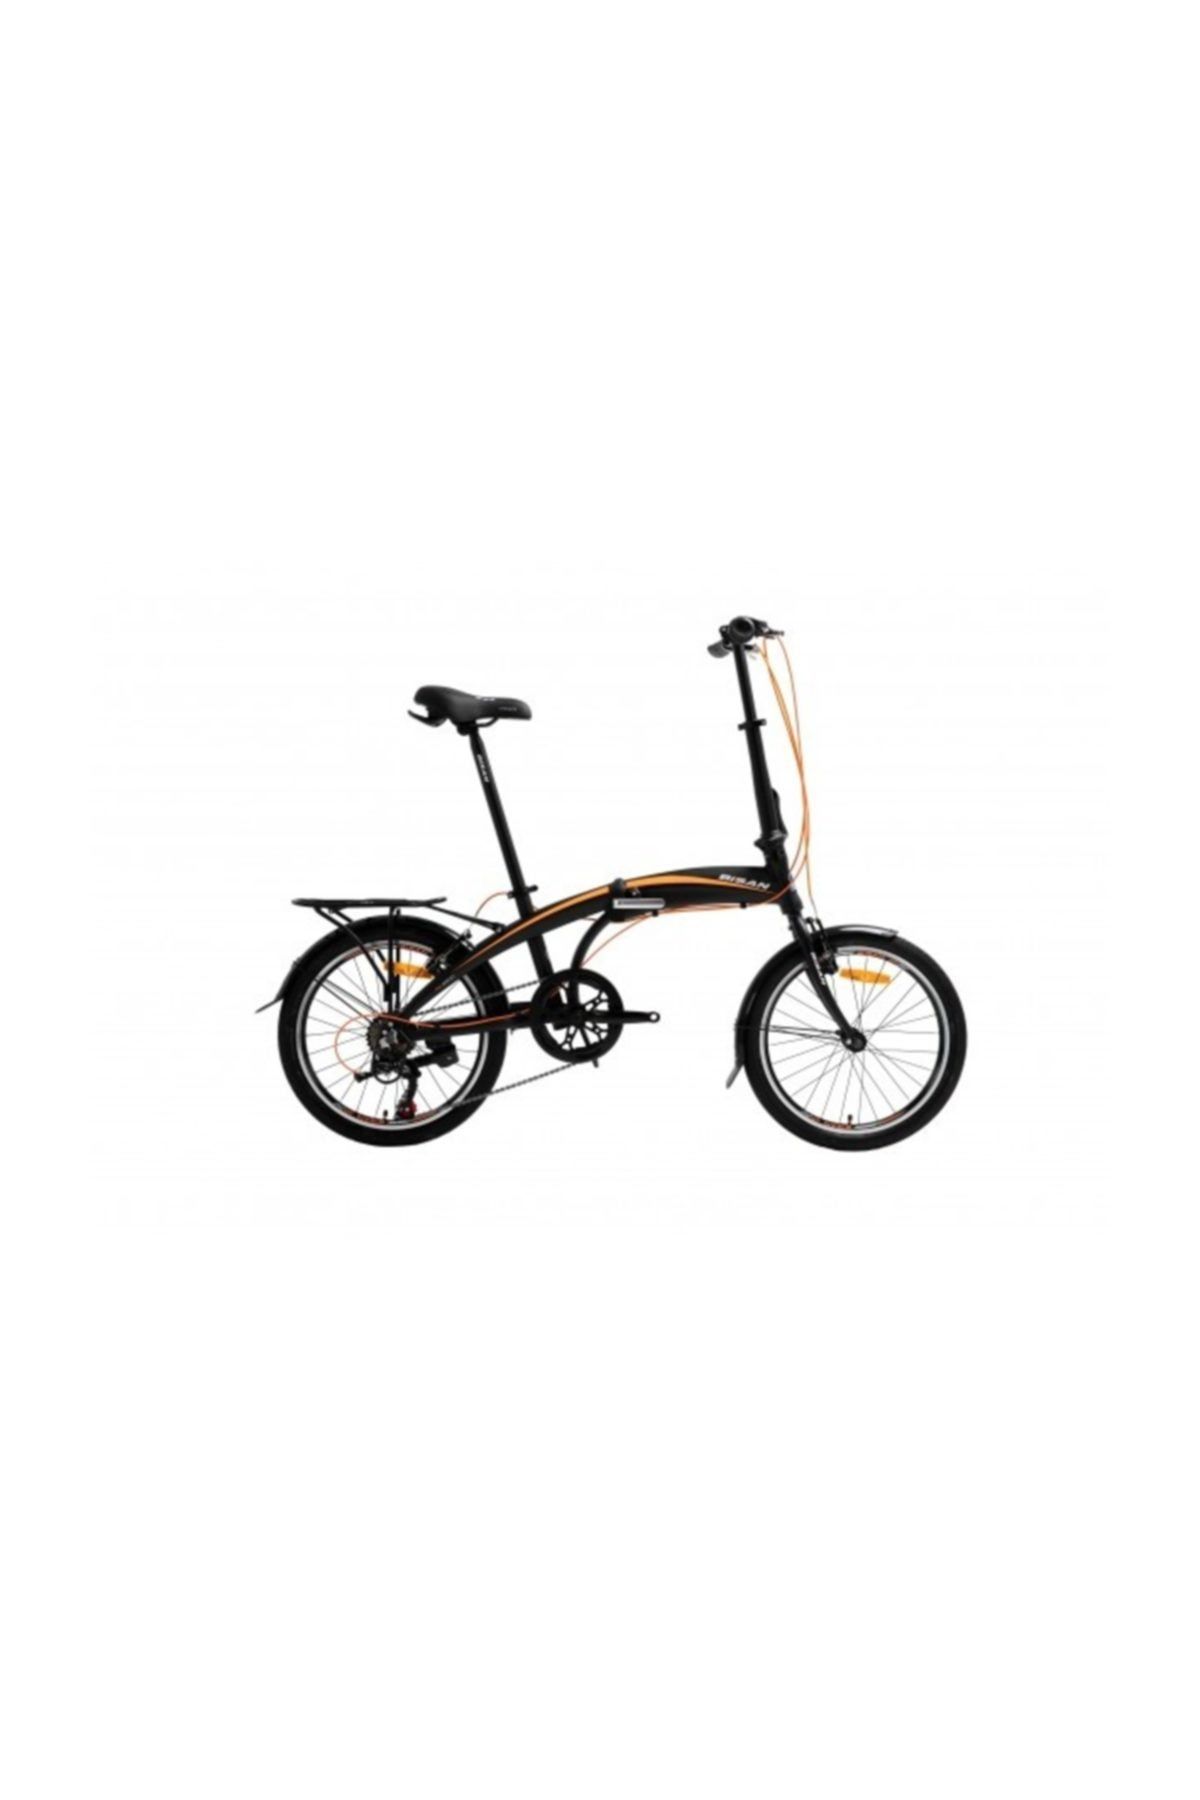 Bisan Fx 3500 Katlanır Bisiklet | Siyah-turuncu